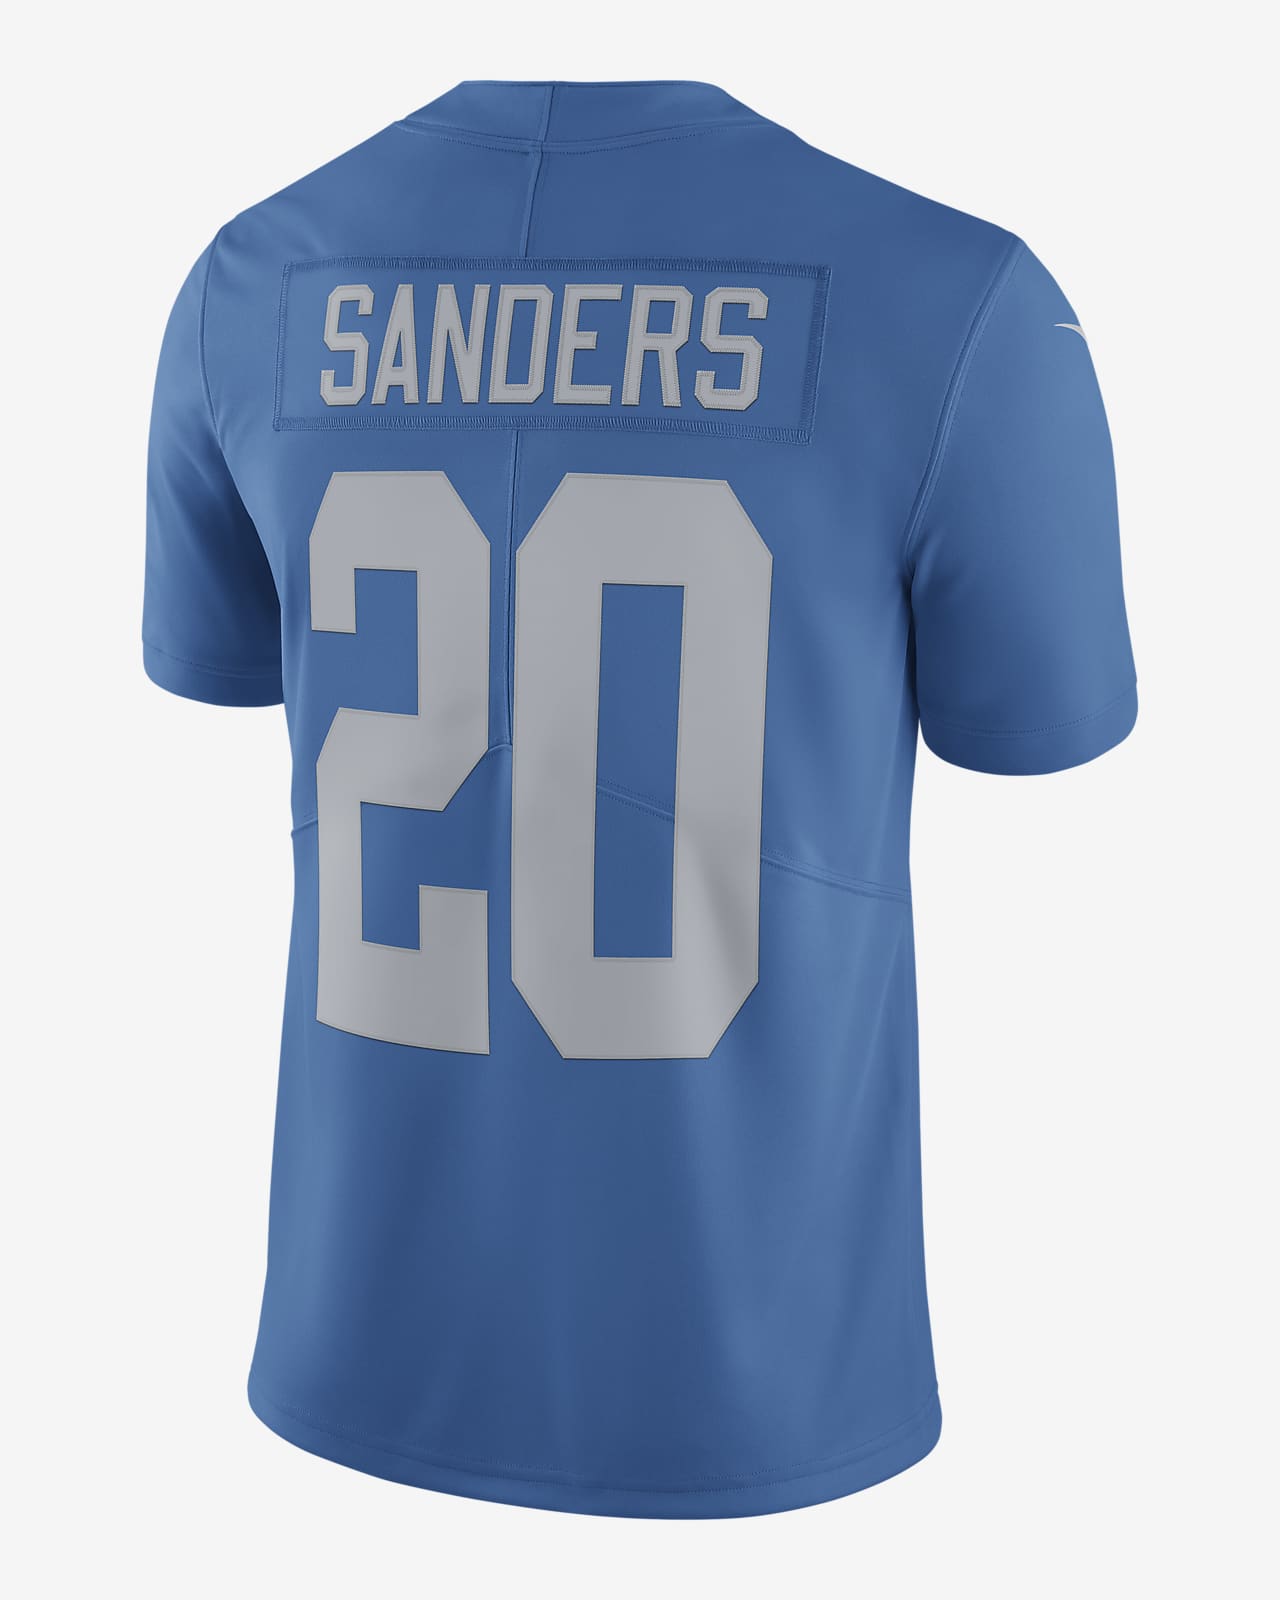 NFL Detroit Lions Nike Vapor Untouchable (Barry Sanders) Men's Limited Football Jersey - Blue M